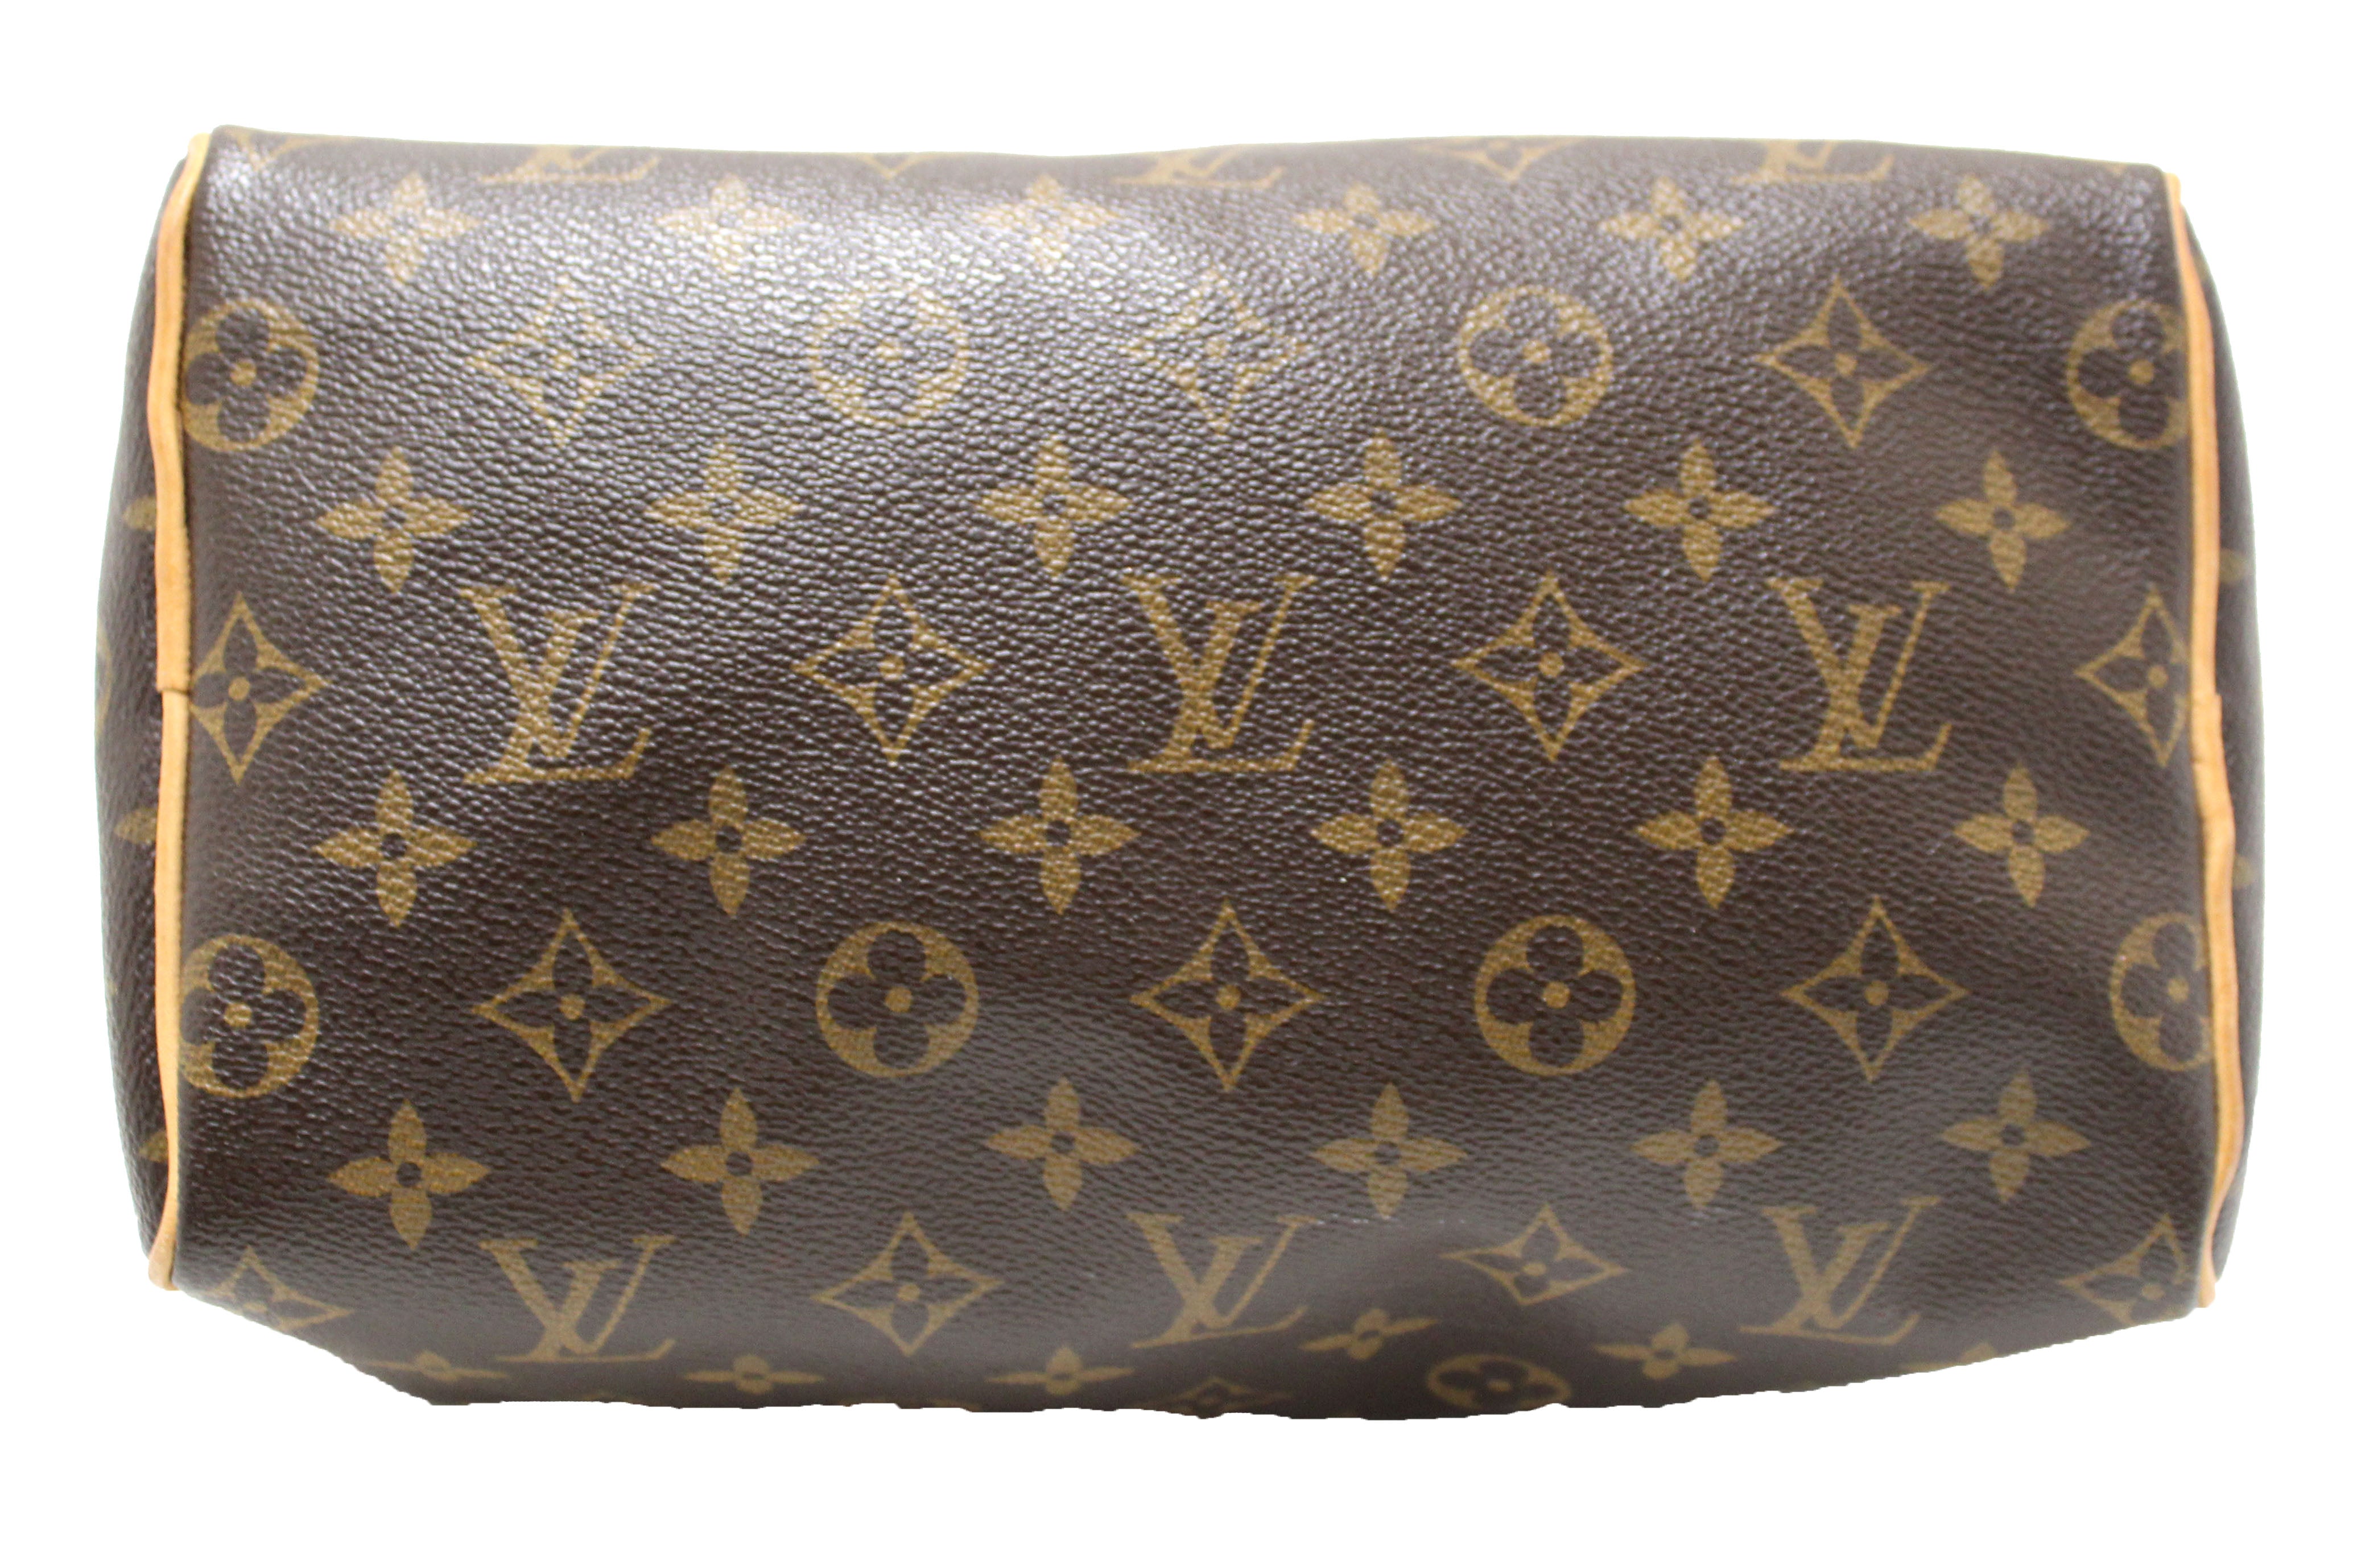 Authentic Louis Vuitton Classic Monogram Speedy 25 Handbag – Paris